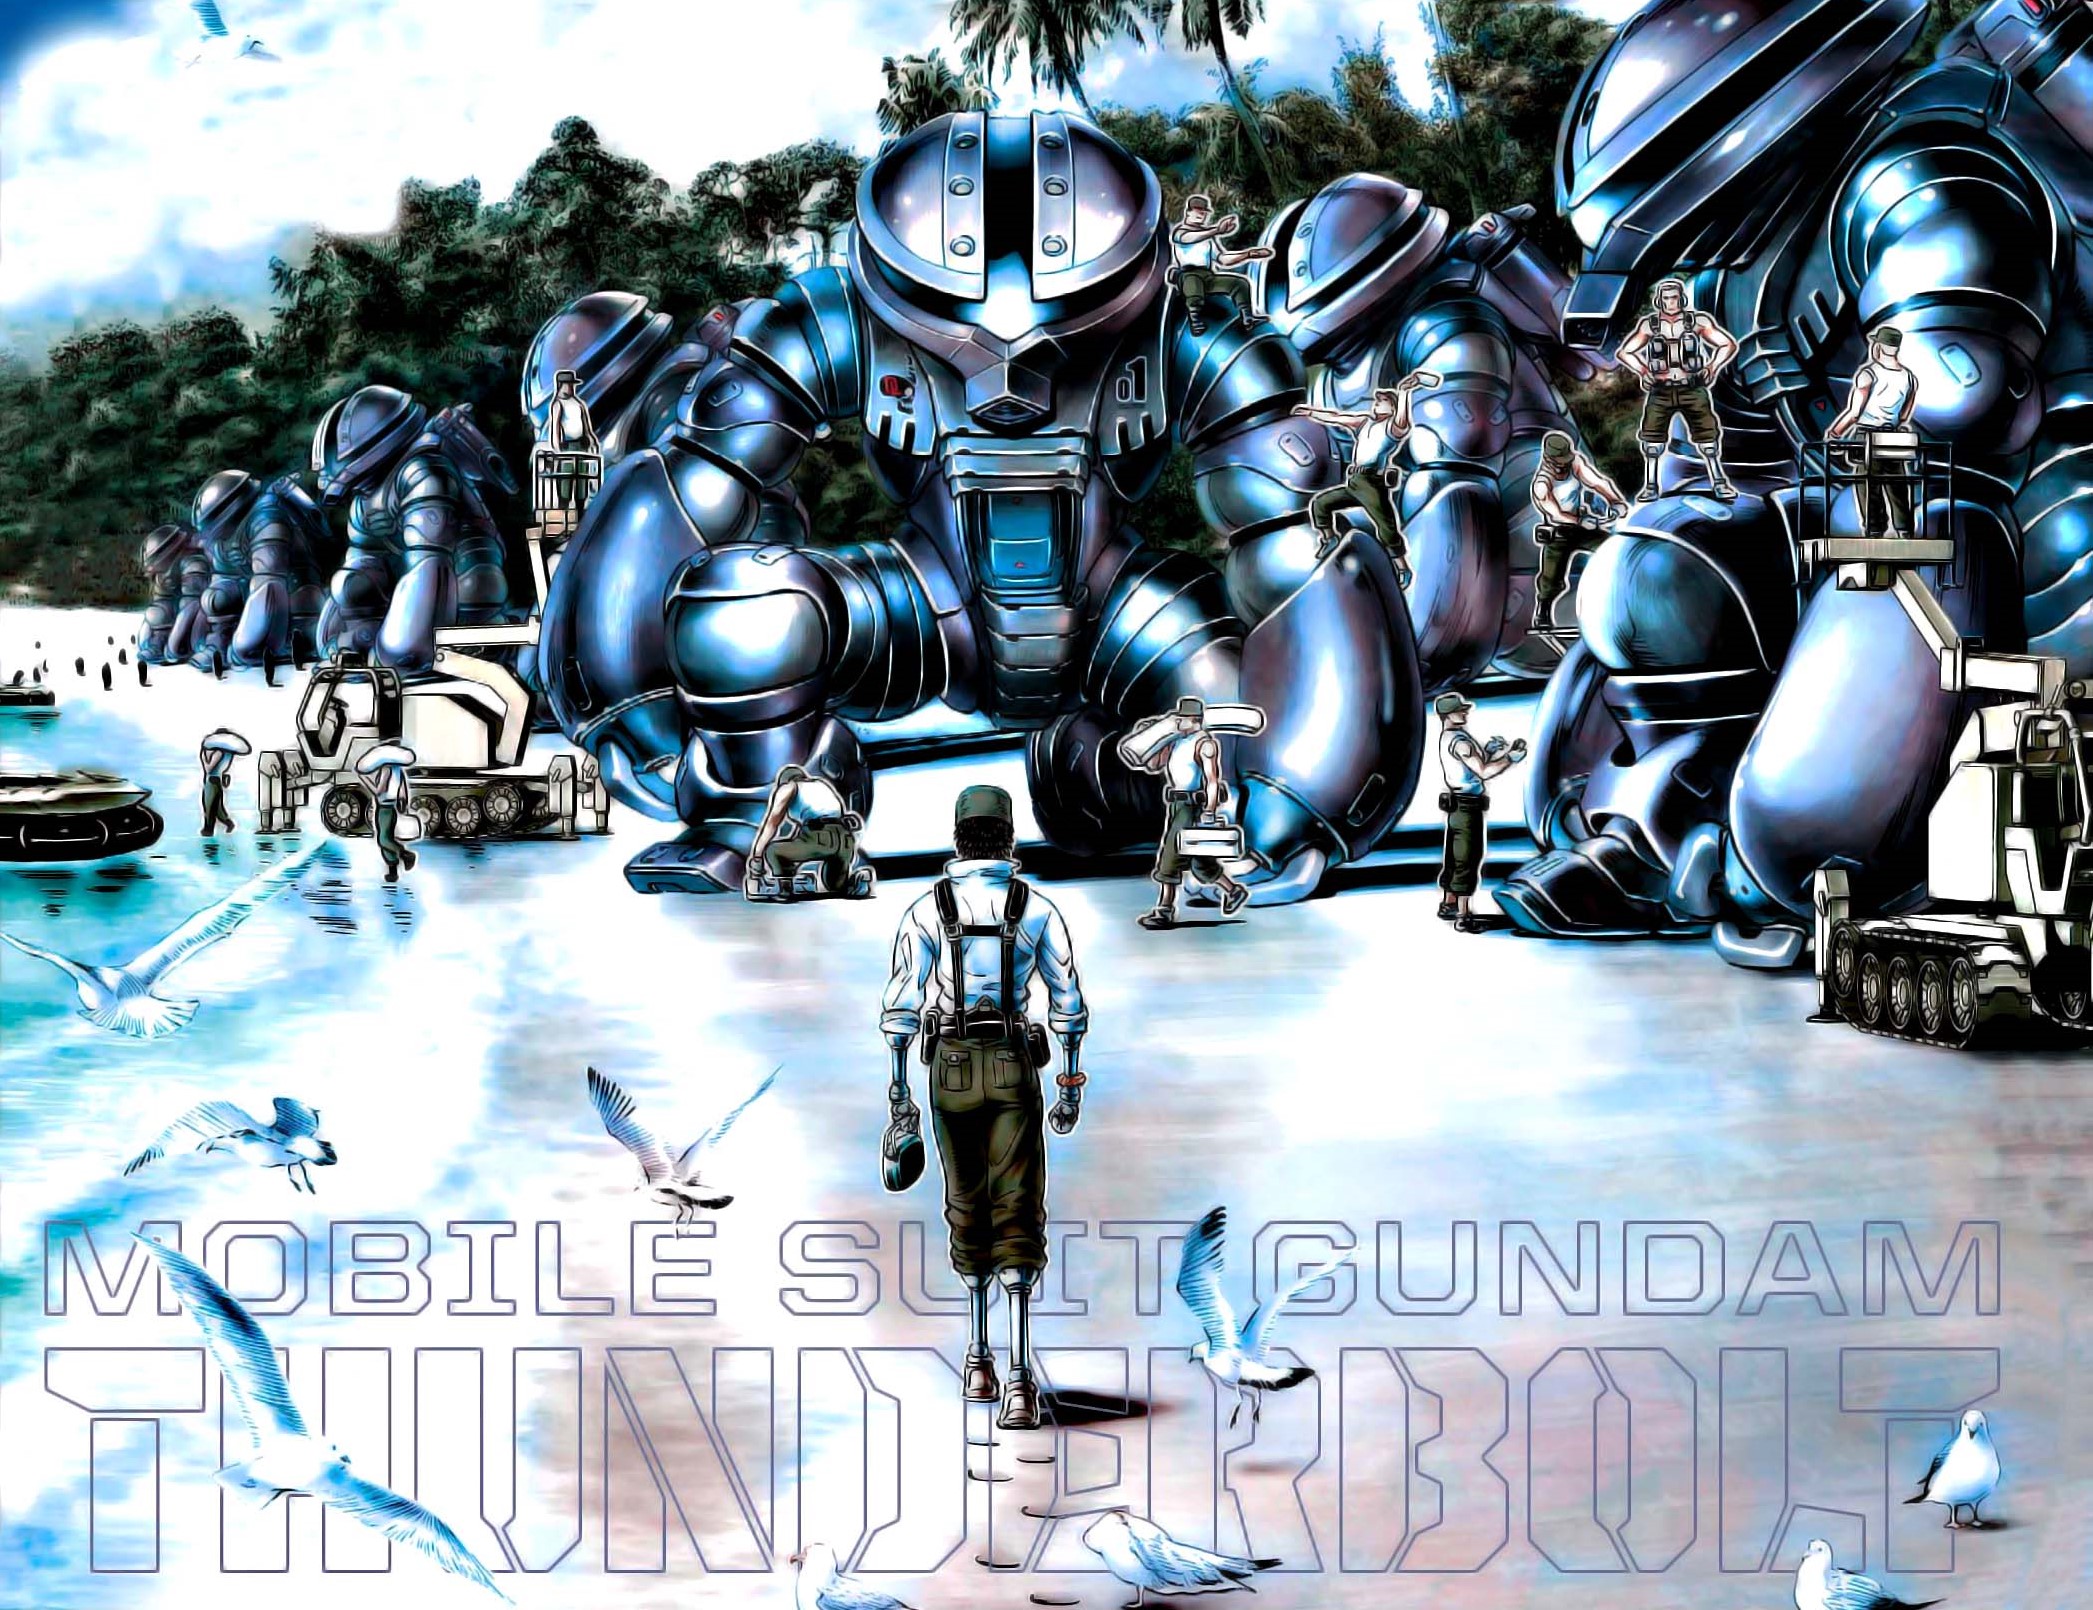 Gundam Thunderbolt Wallpapers